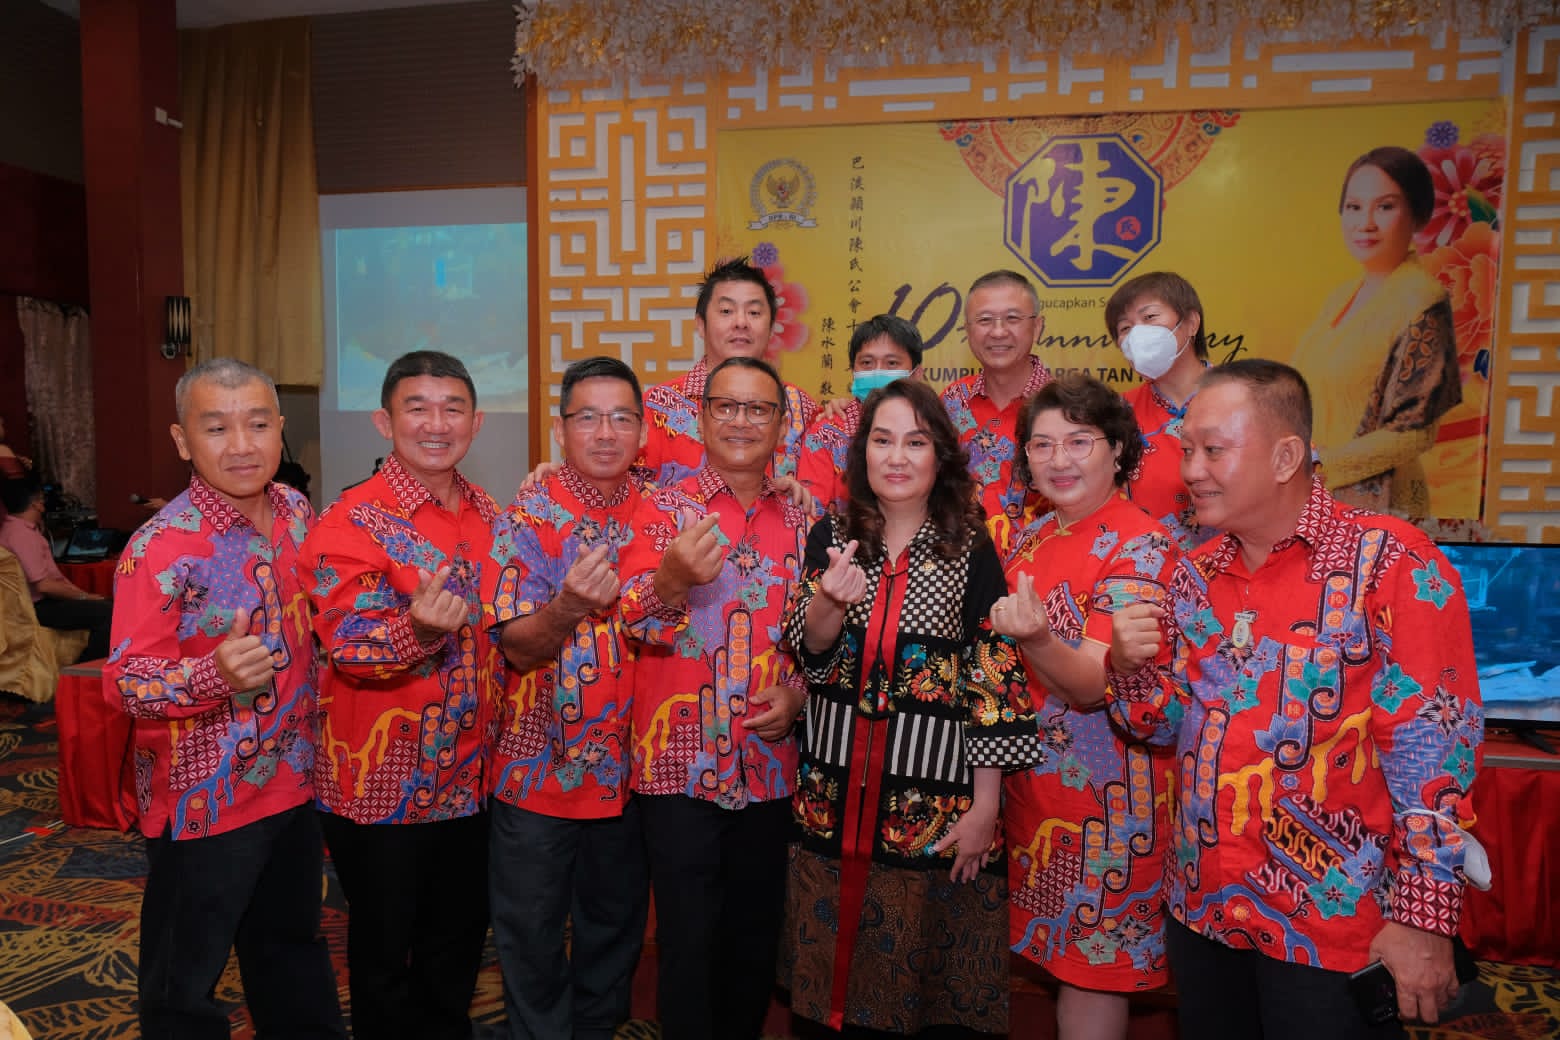 Anggota DPR RI Cen Sui Lan secara resmi menyerahkan Bantuan Hibah 1 unit mobil operasional mendukung Kegiatan sekretariat Perkumpulan Marga Tan